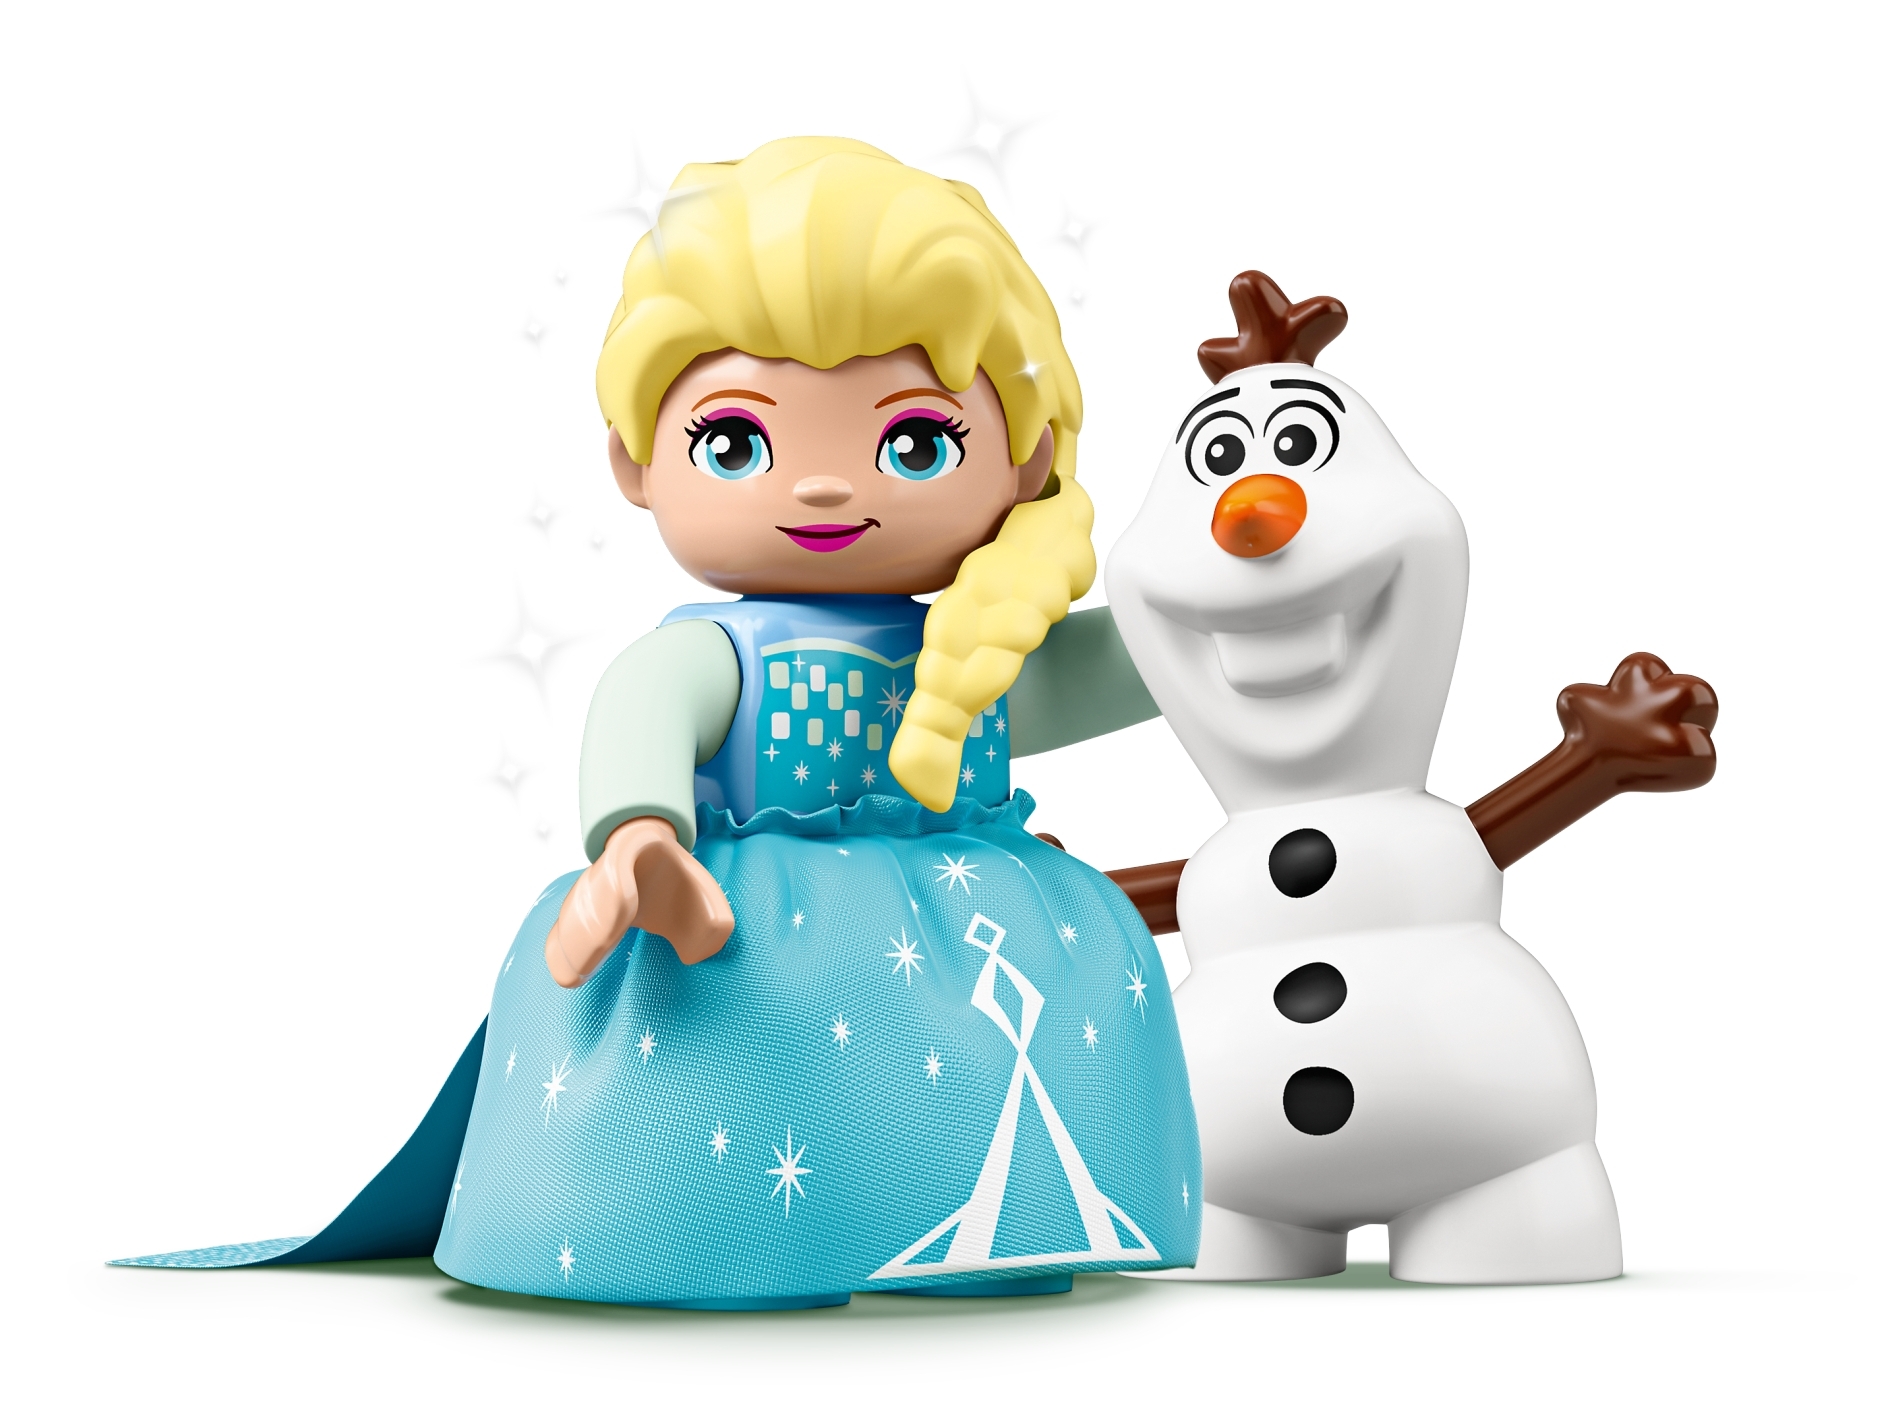 LEGO DUPLO Disney Frozen Elsa and Olaf's Tea Party 10920 Playset 17pcs Jan.1,20 